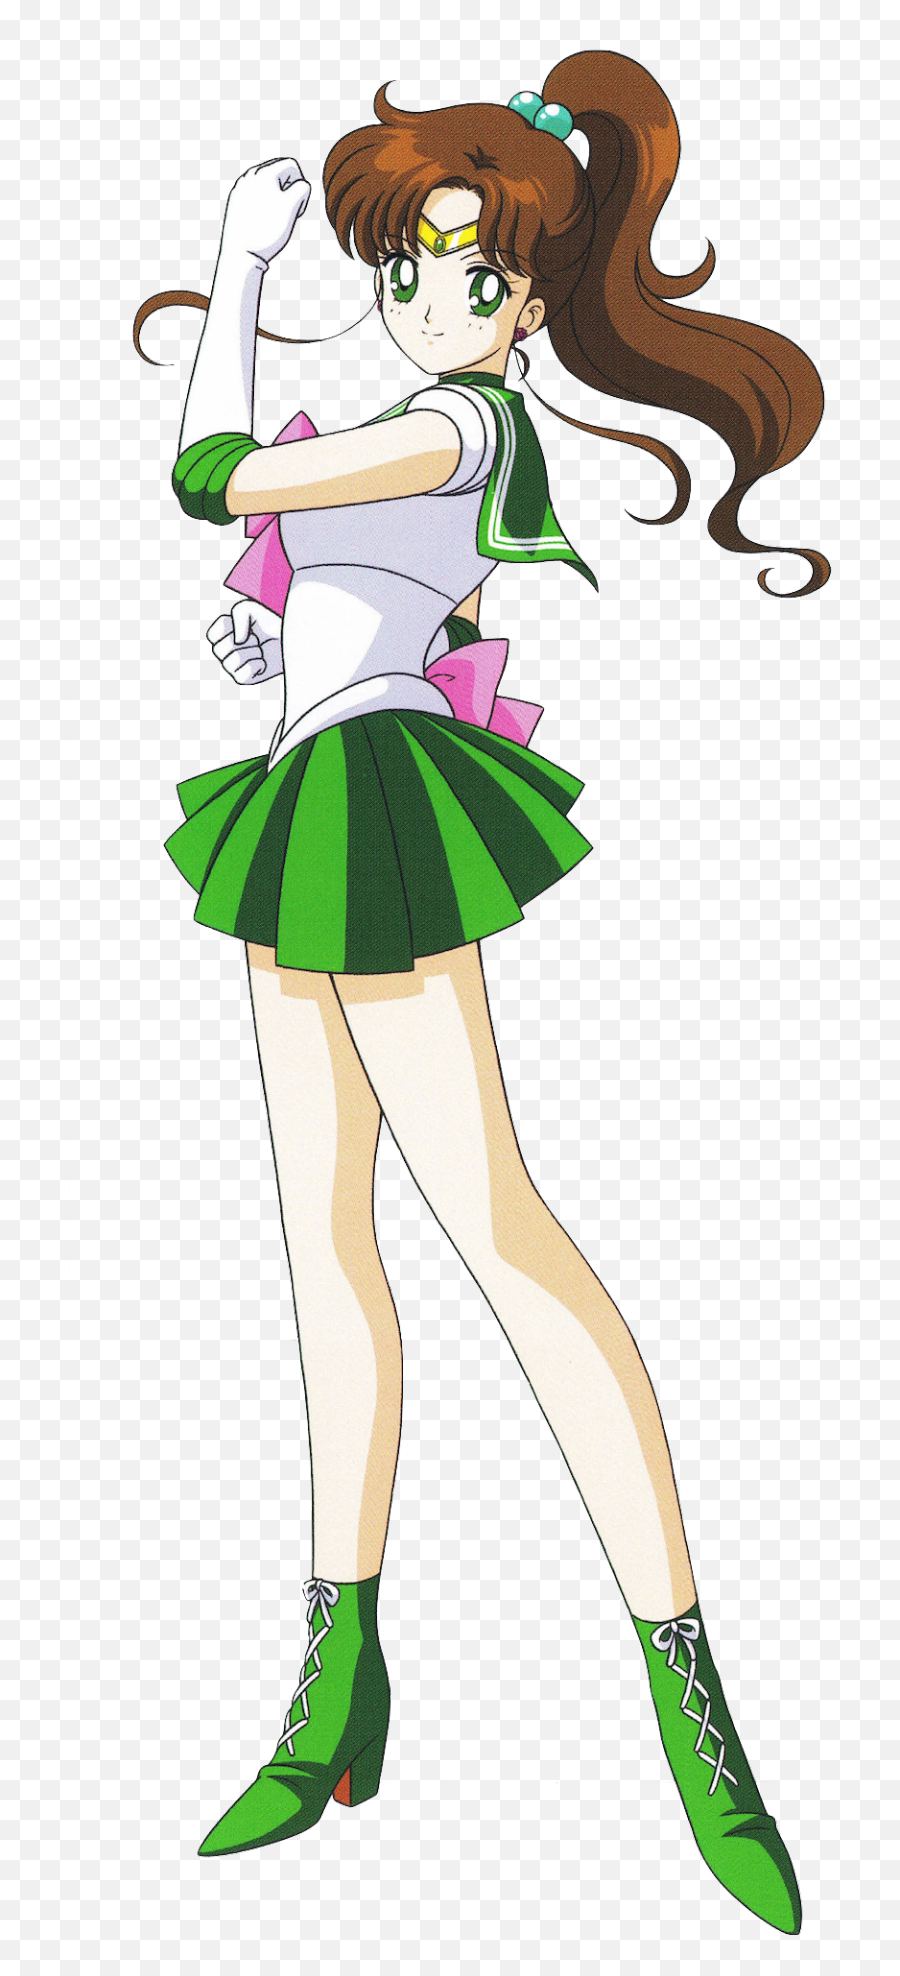 Sailor Jupiter - Sailor Jupiter Transparent Png,Jupiter Transparent